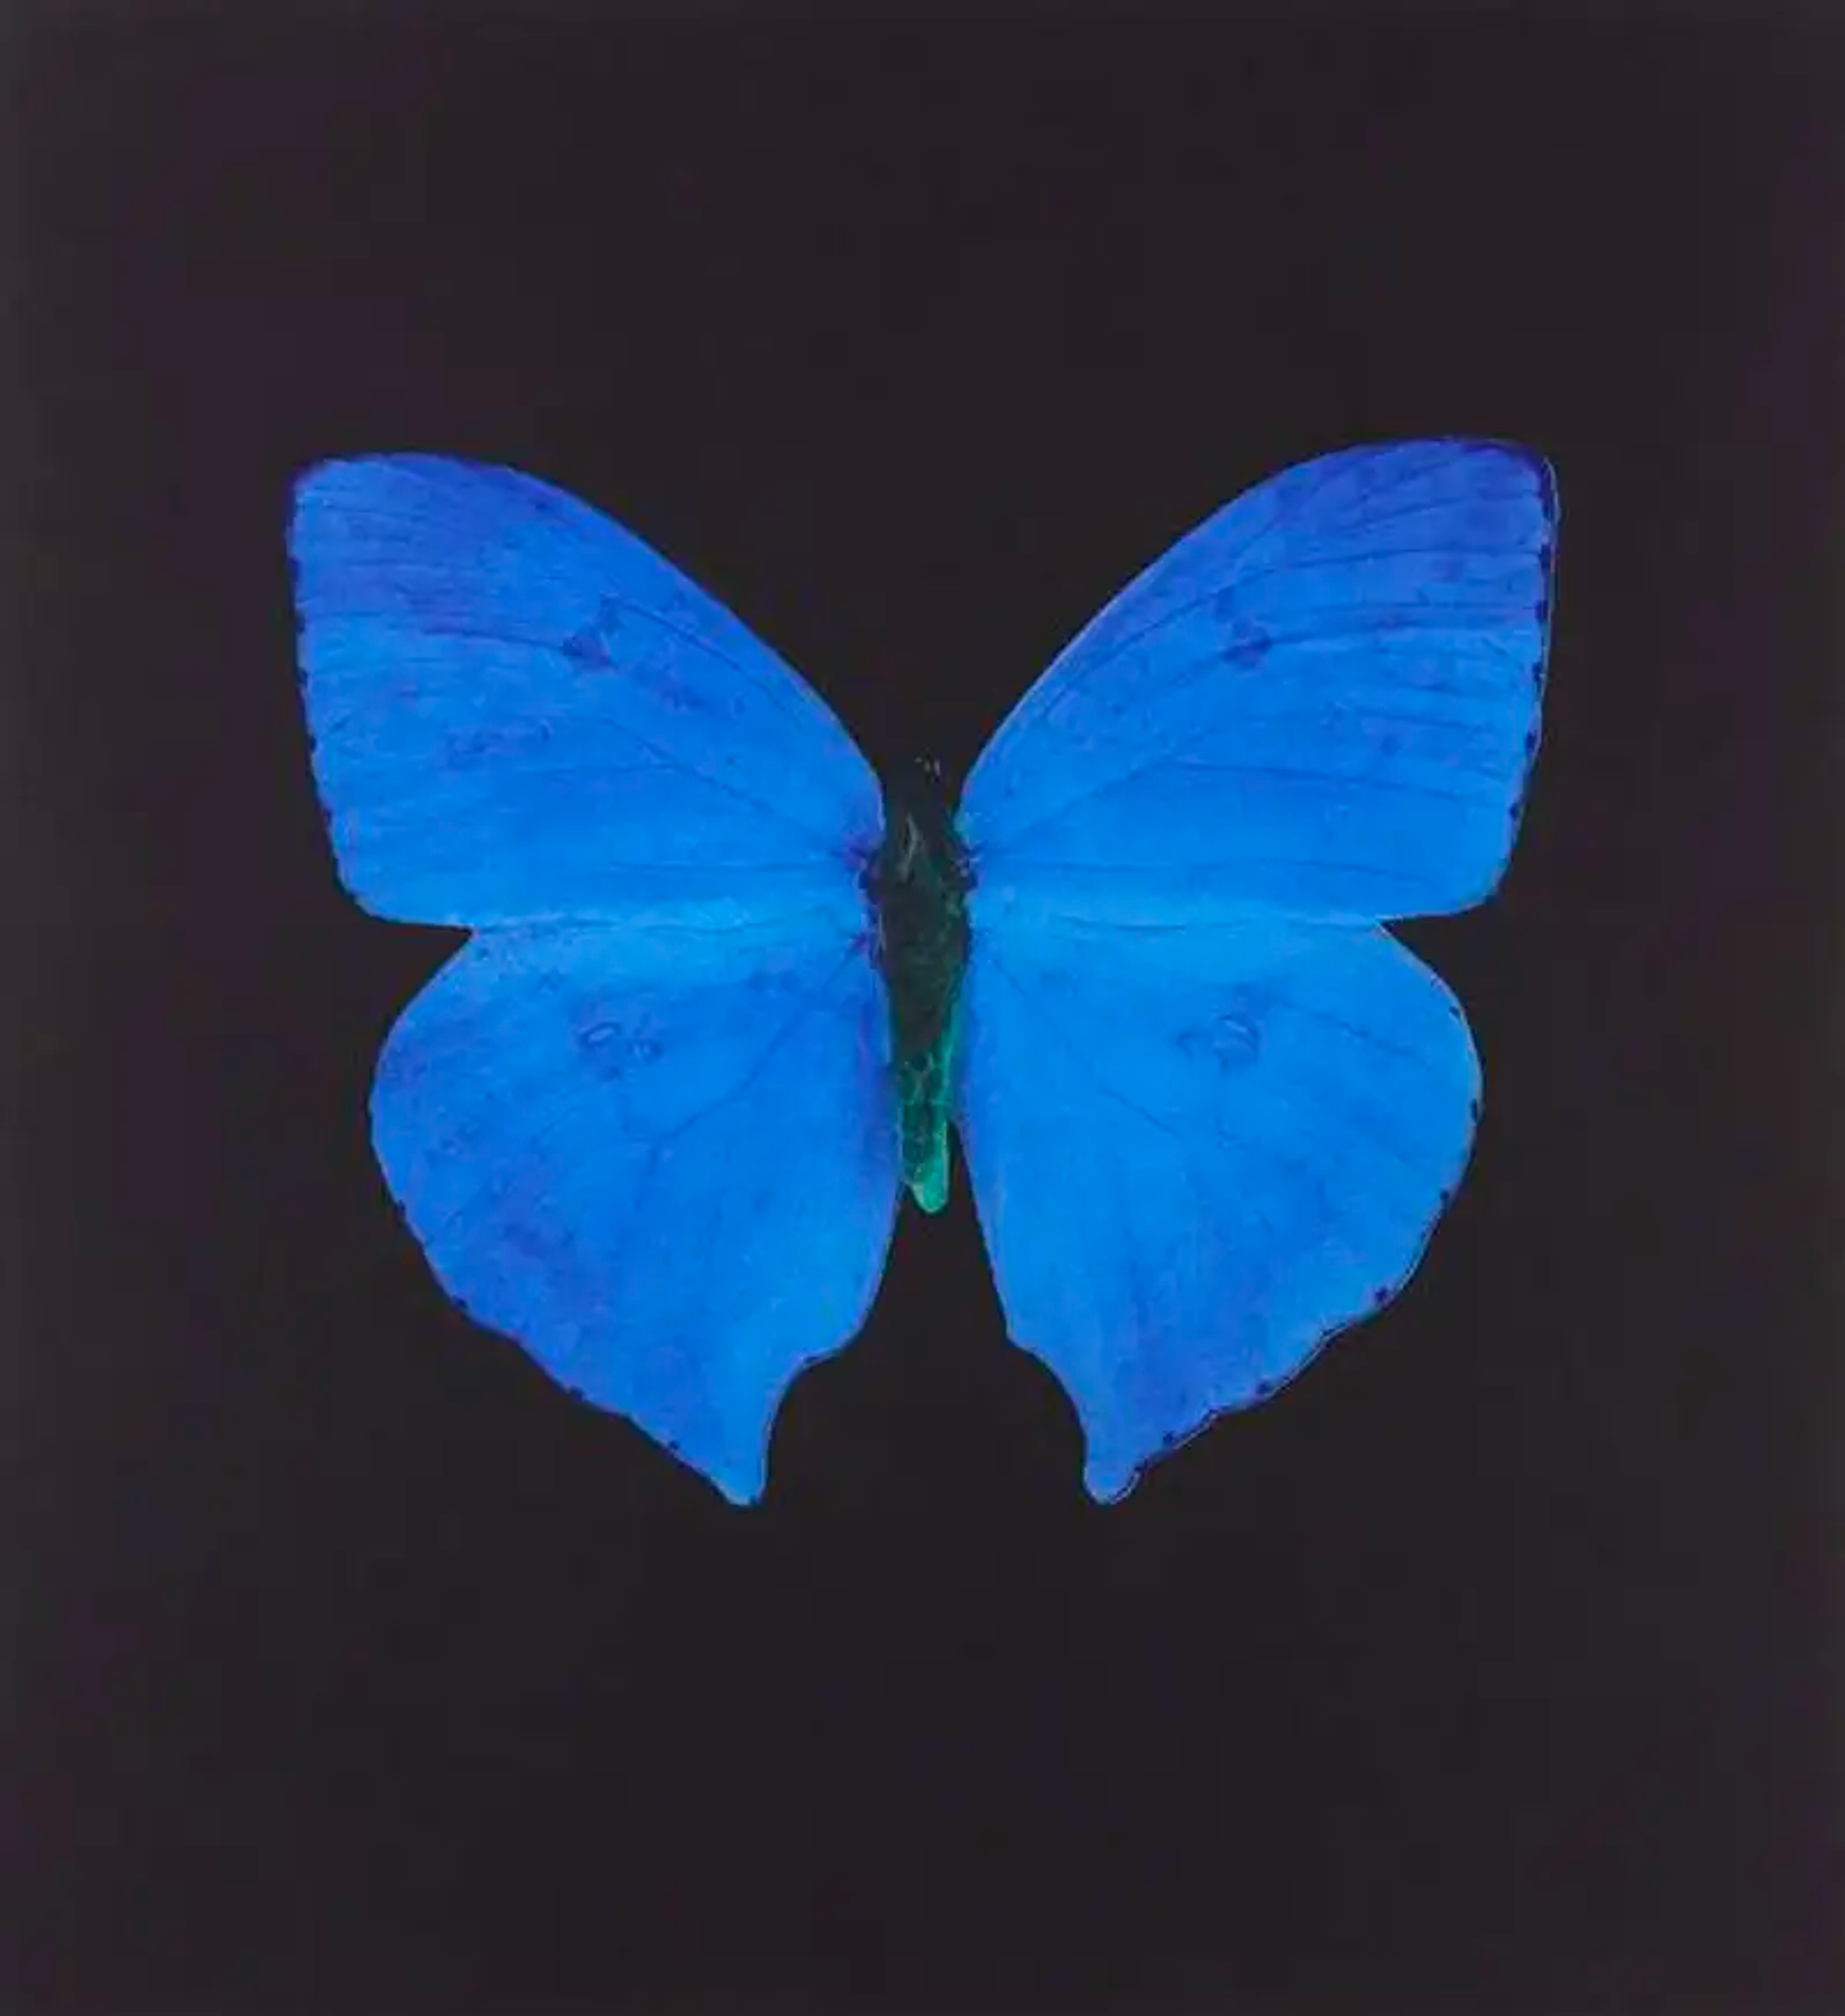  Butterfly Blue by Damien Hirst - MyArtBroker 